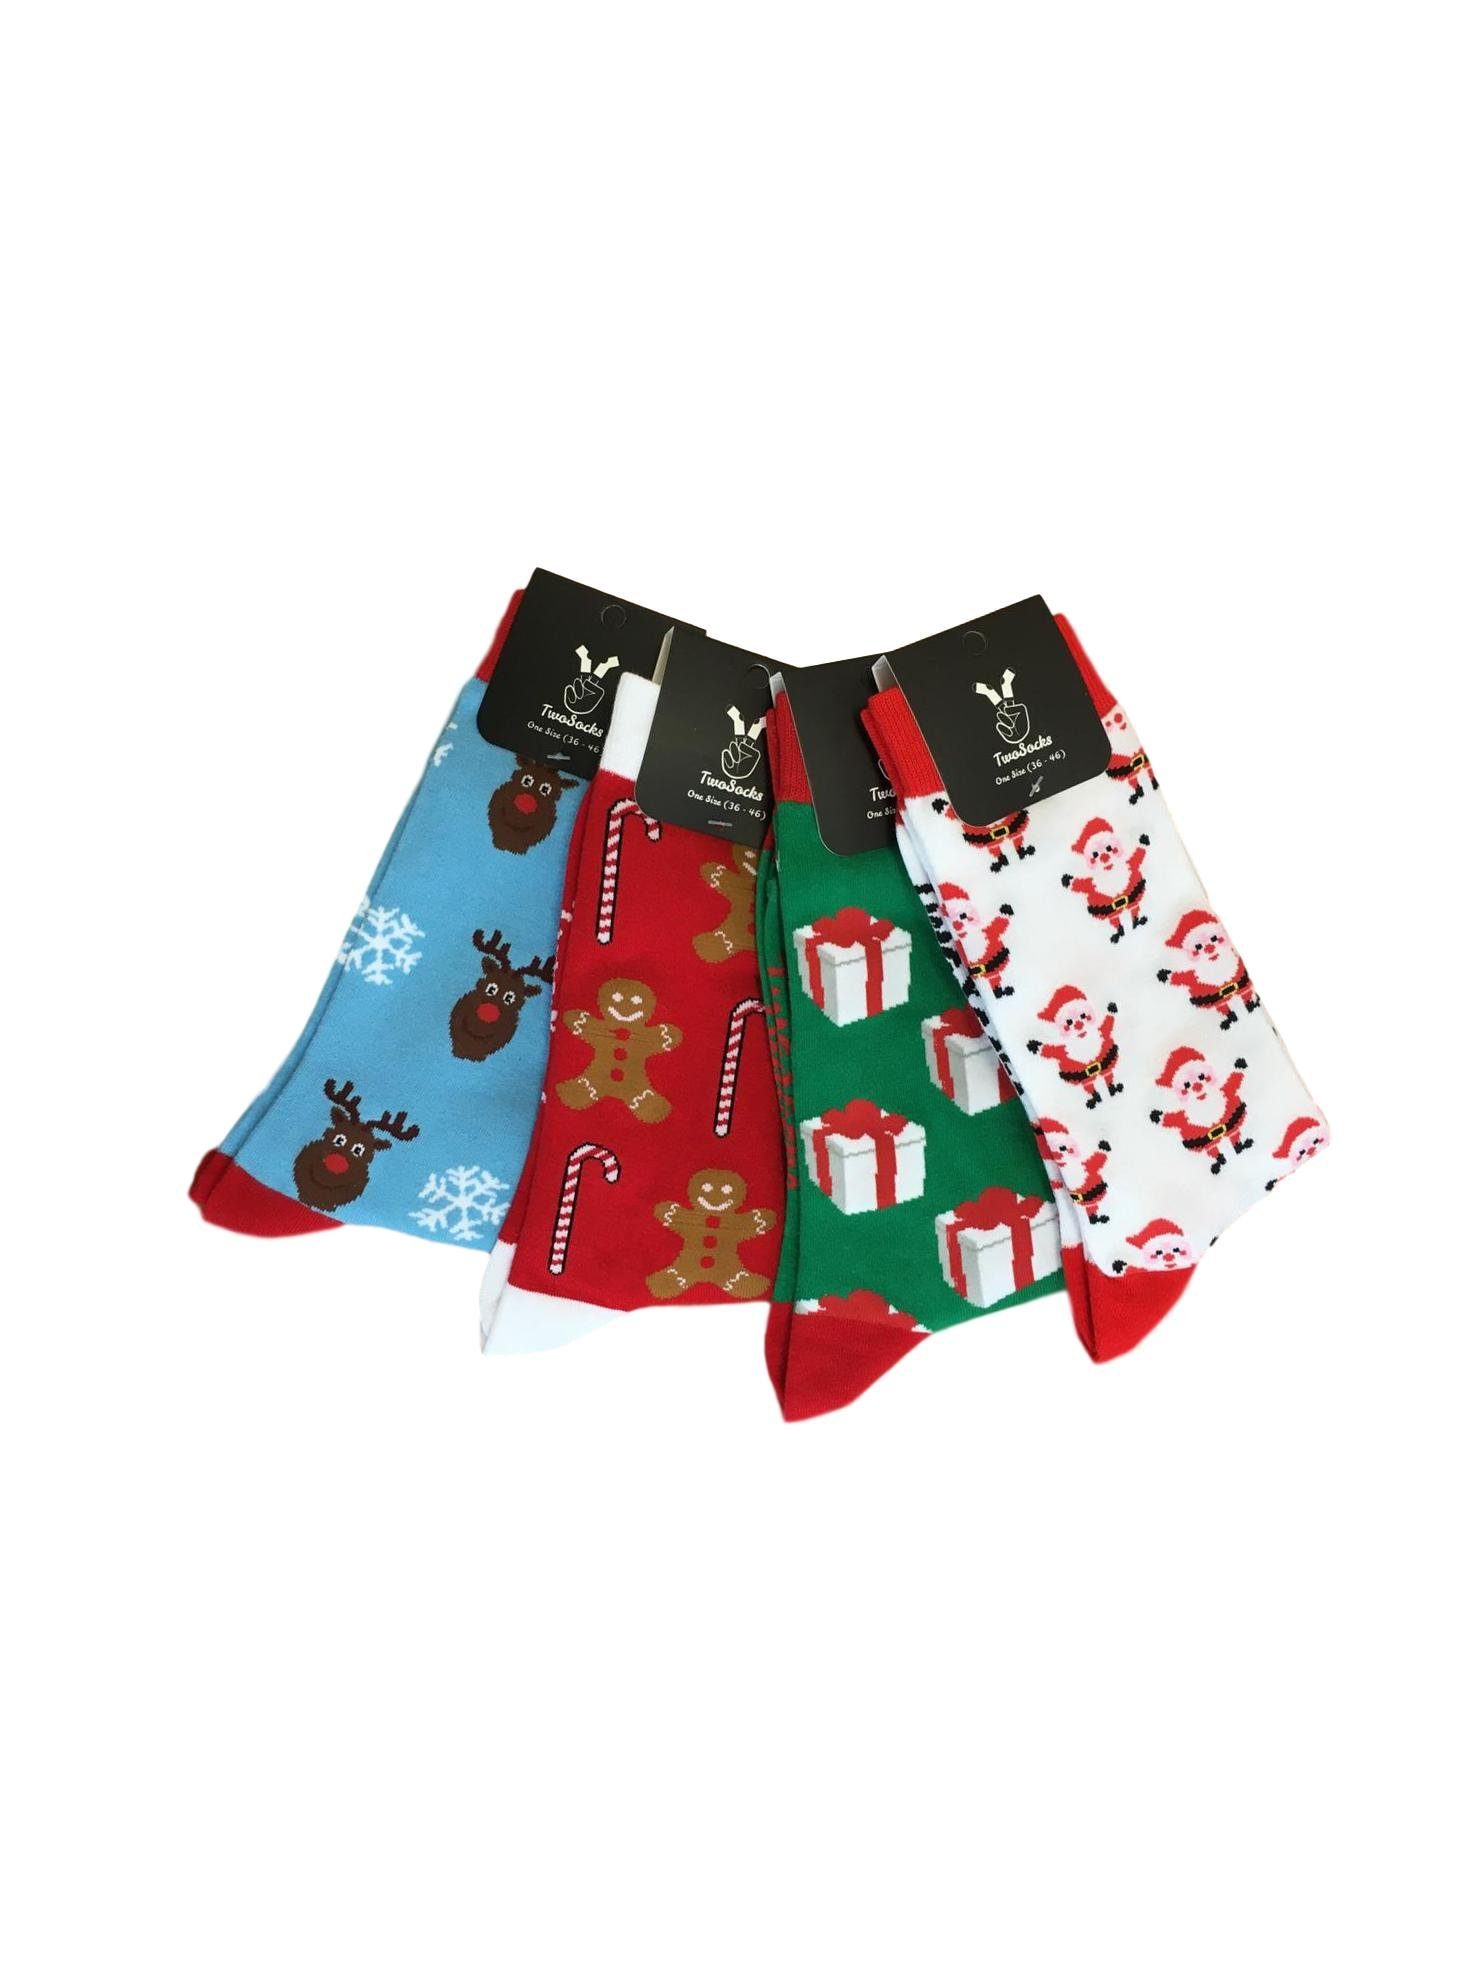 TwoSocks Freizeitsocken Weihnachtssocken Set Damen & Herren witzige Socken, Einheitsgröße (4 Paar) 4er-Pack